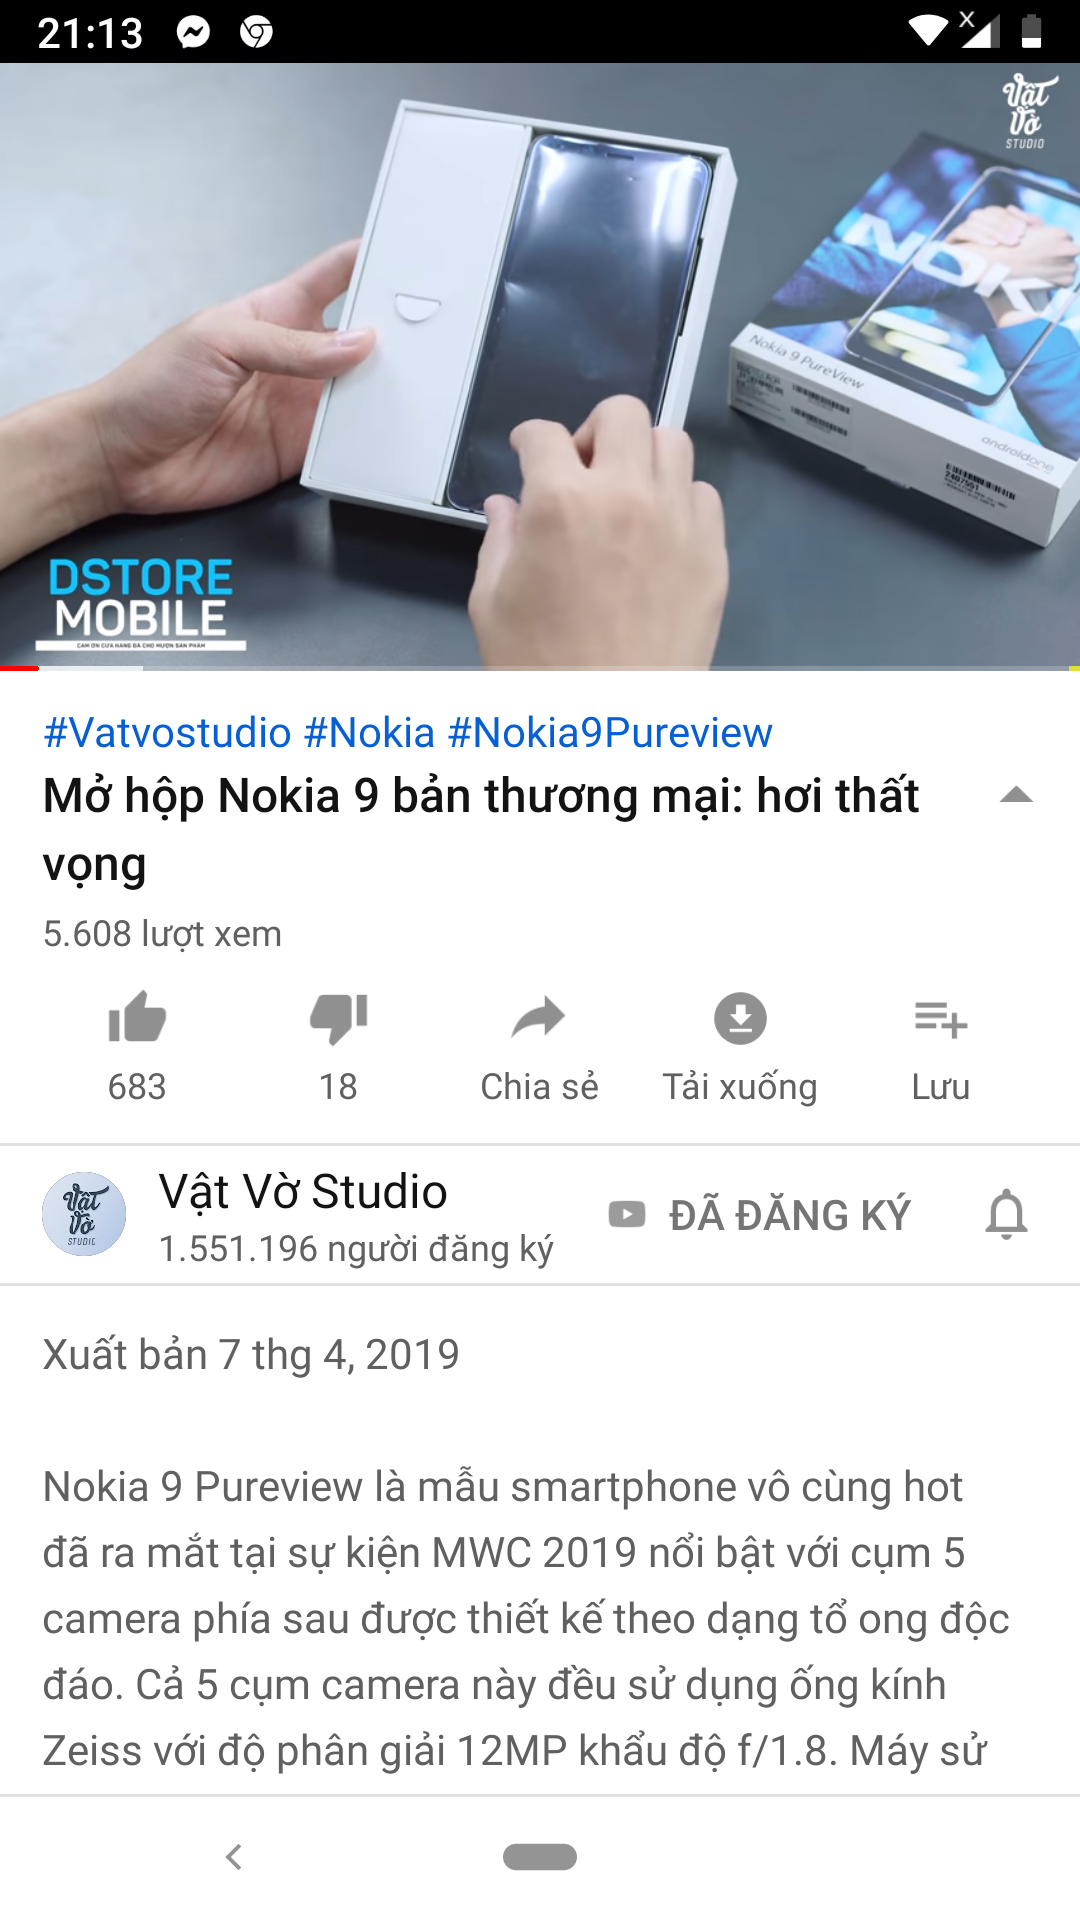 Mở hộp Nokia 9 đầu tiên tại Việt Năm